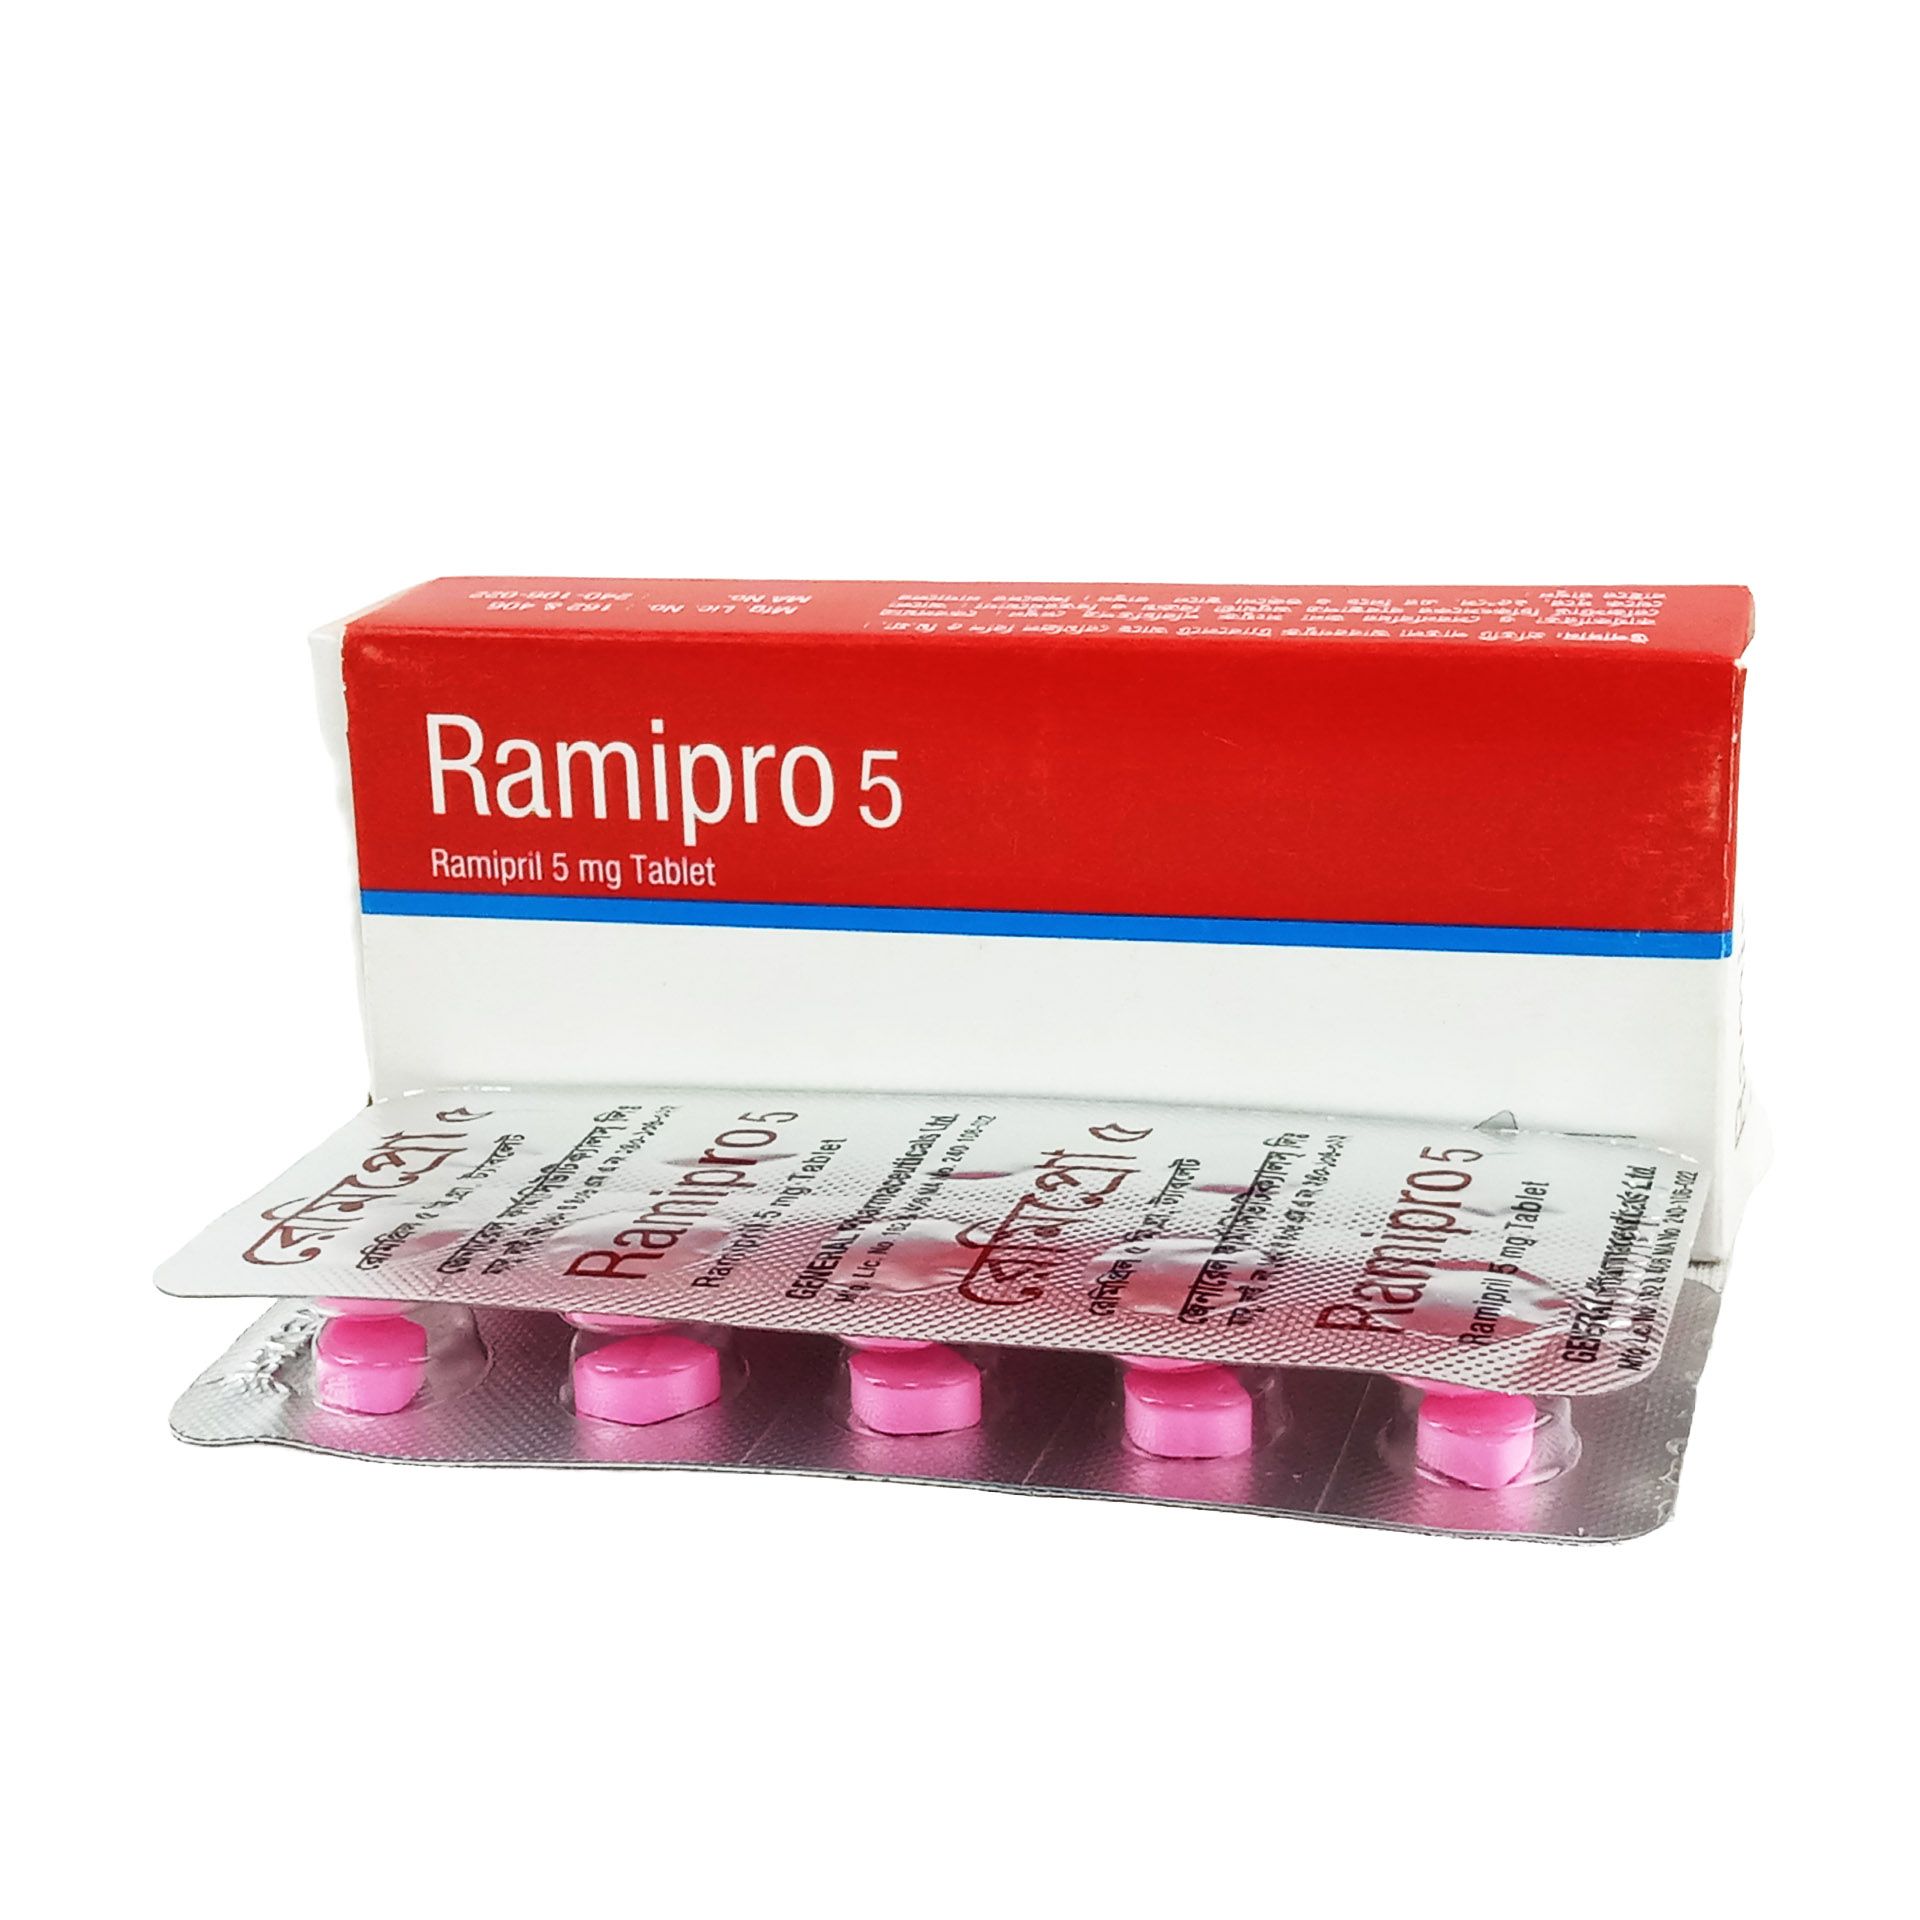 Ramipro 5mg Tablet